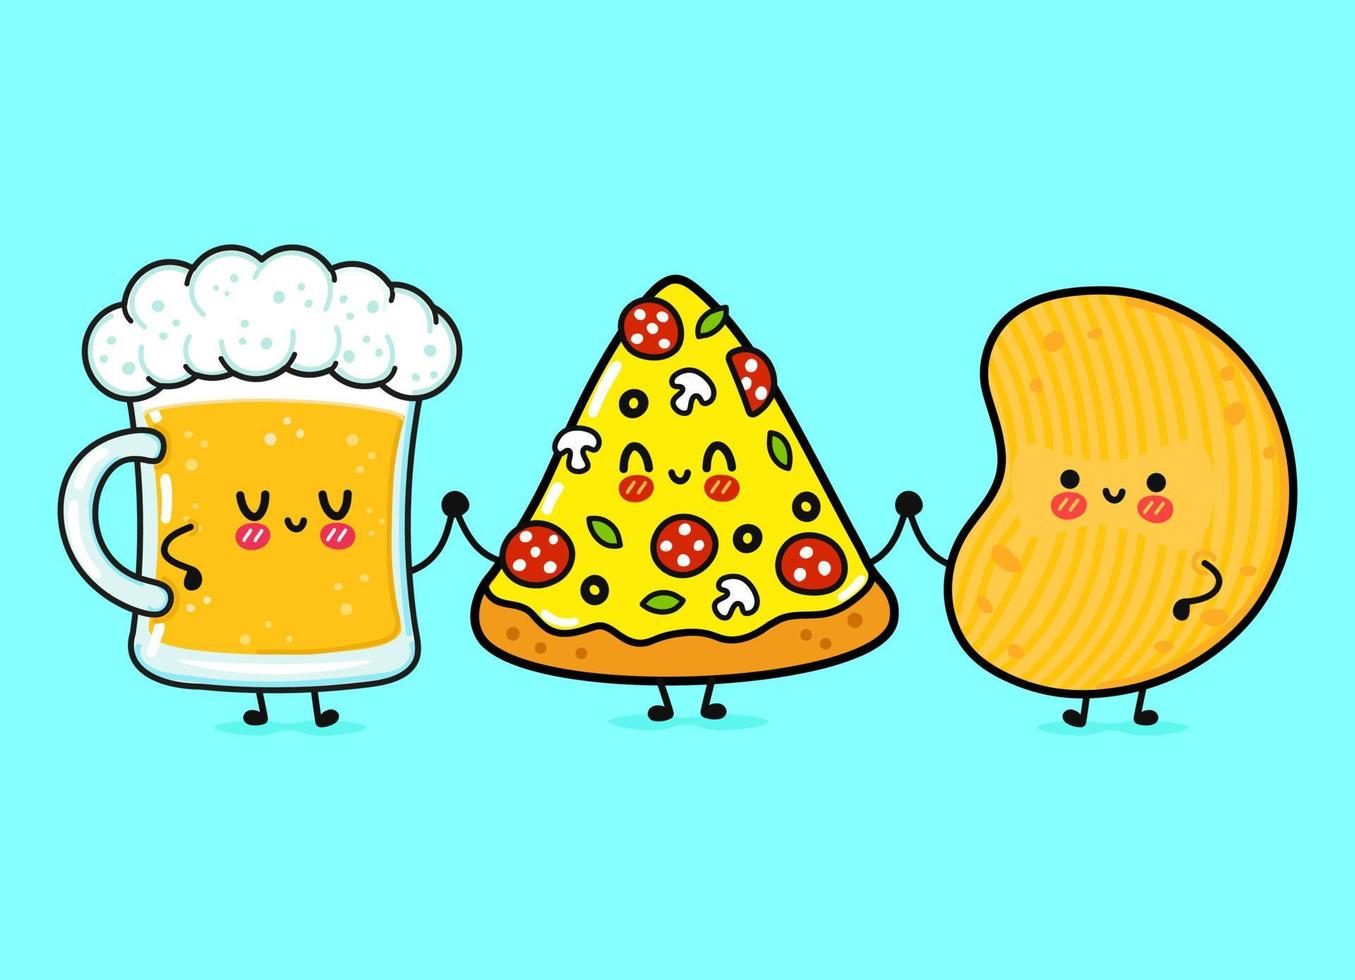 schattig, grappig vrolijk glas bier, pizza en chips. vector hand getekend kawaii stripfiguren, illustratie pictogram. grappige cartoon glas bier, pizza en chips mascotte vrienden concept